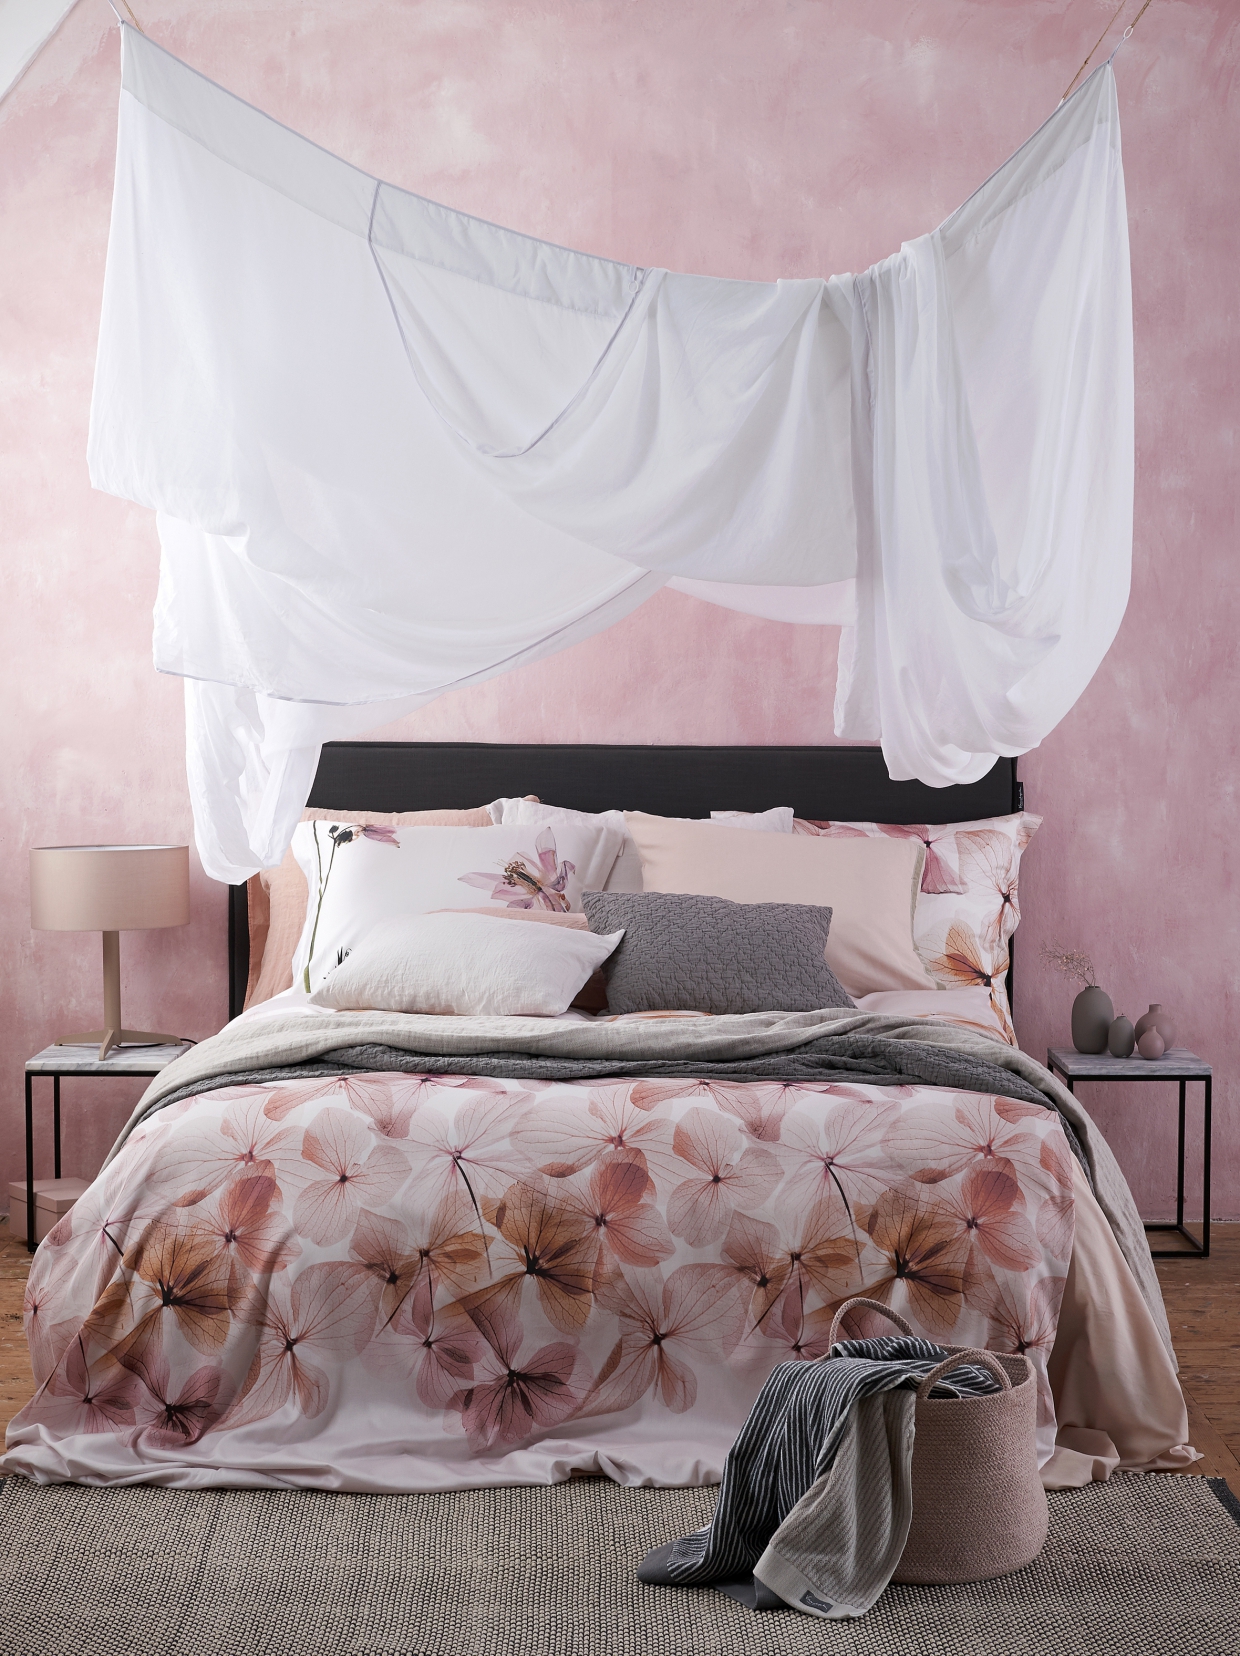 Inspiratie voor een slaapkamer met wit, roze en grijs | ARCHANA.NL #slaapkamers #bedrooms